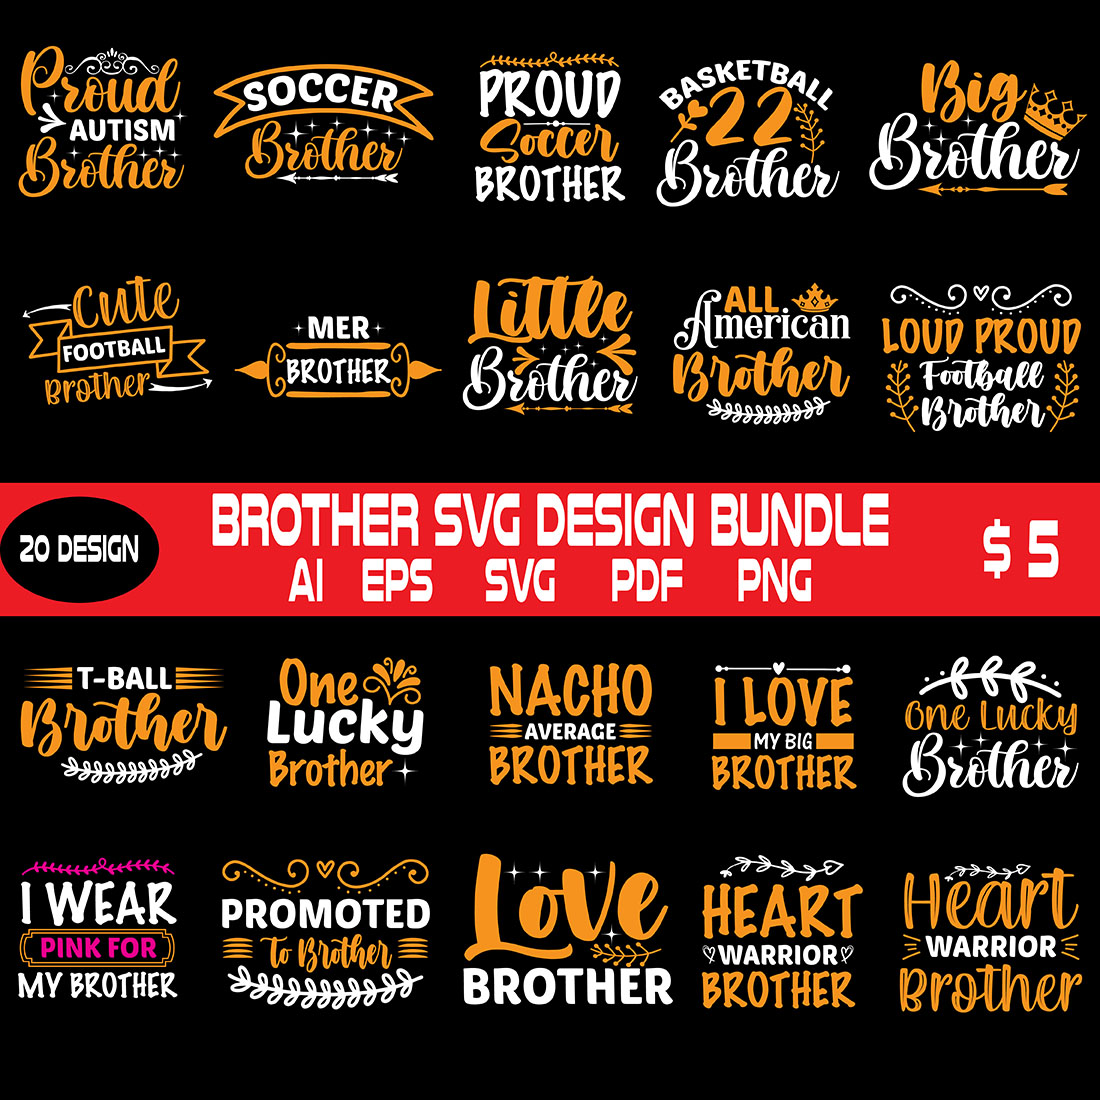 Brother Svg Design Bundle cover image.